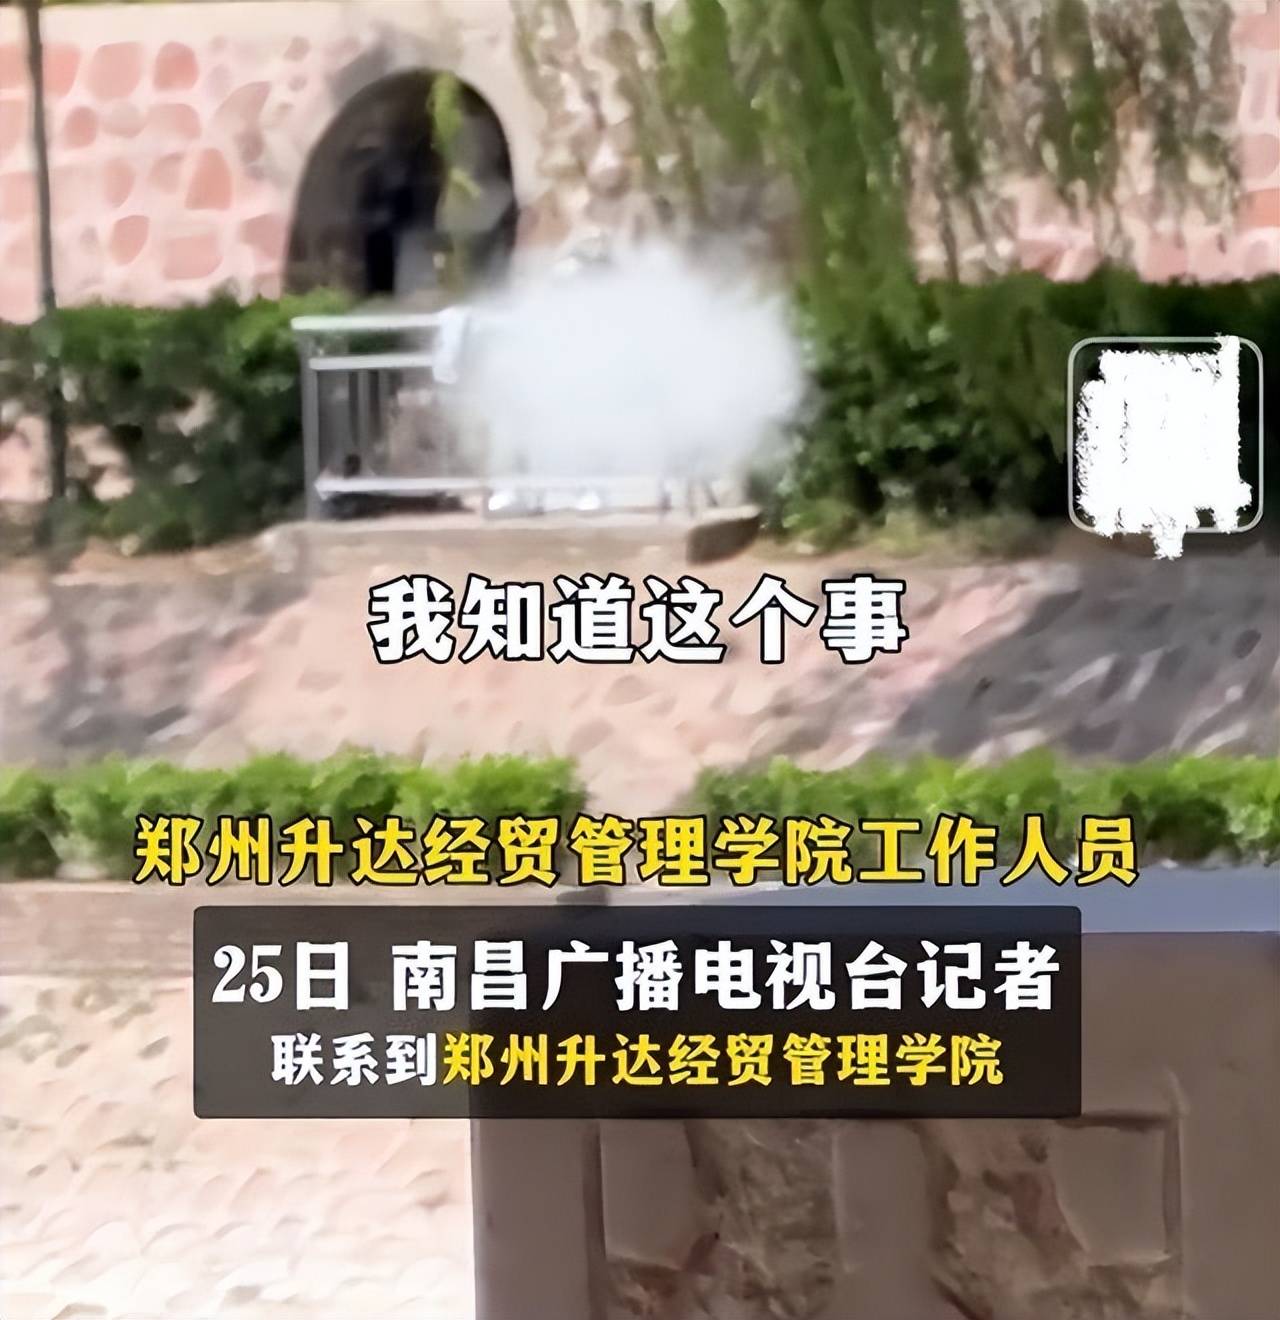 郑州某高校小情侣竟在孟子雕像下做不雅事情,校方回应:行为应该谴责